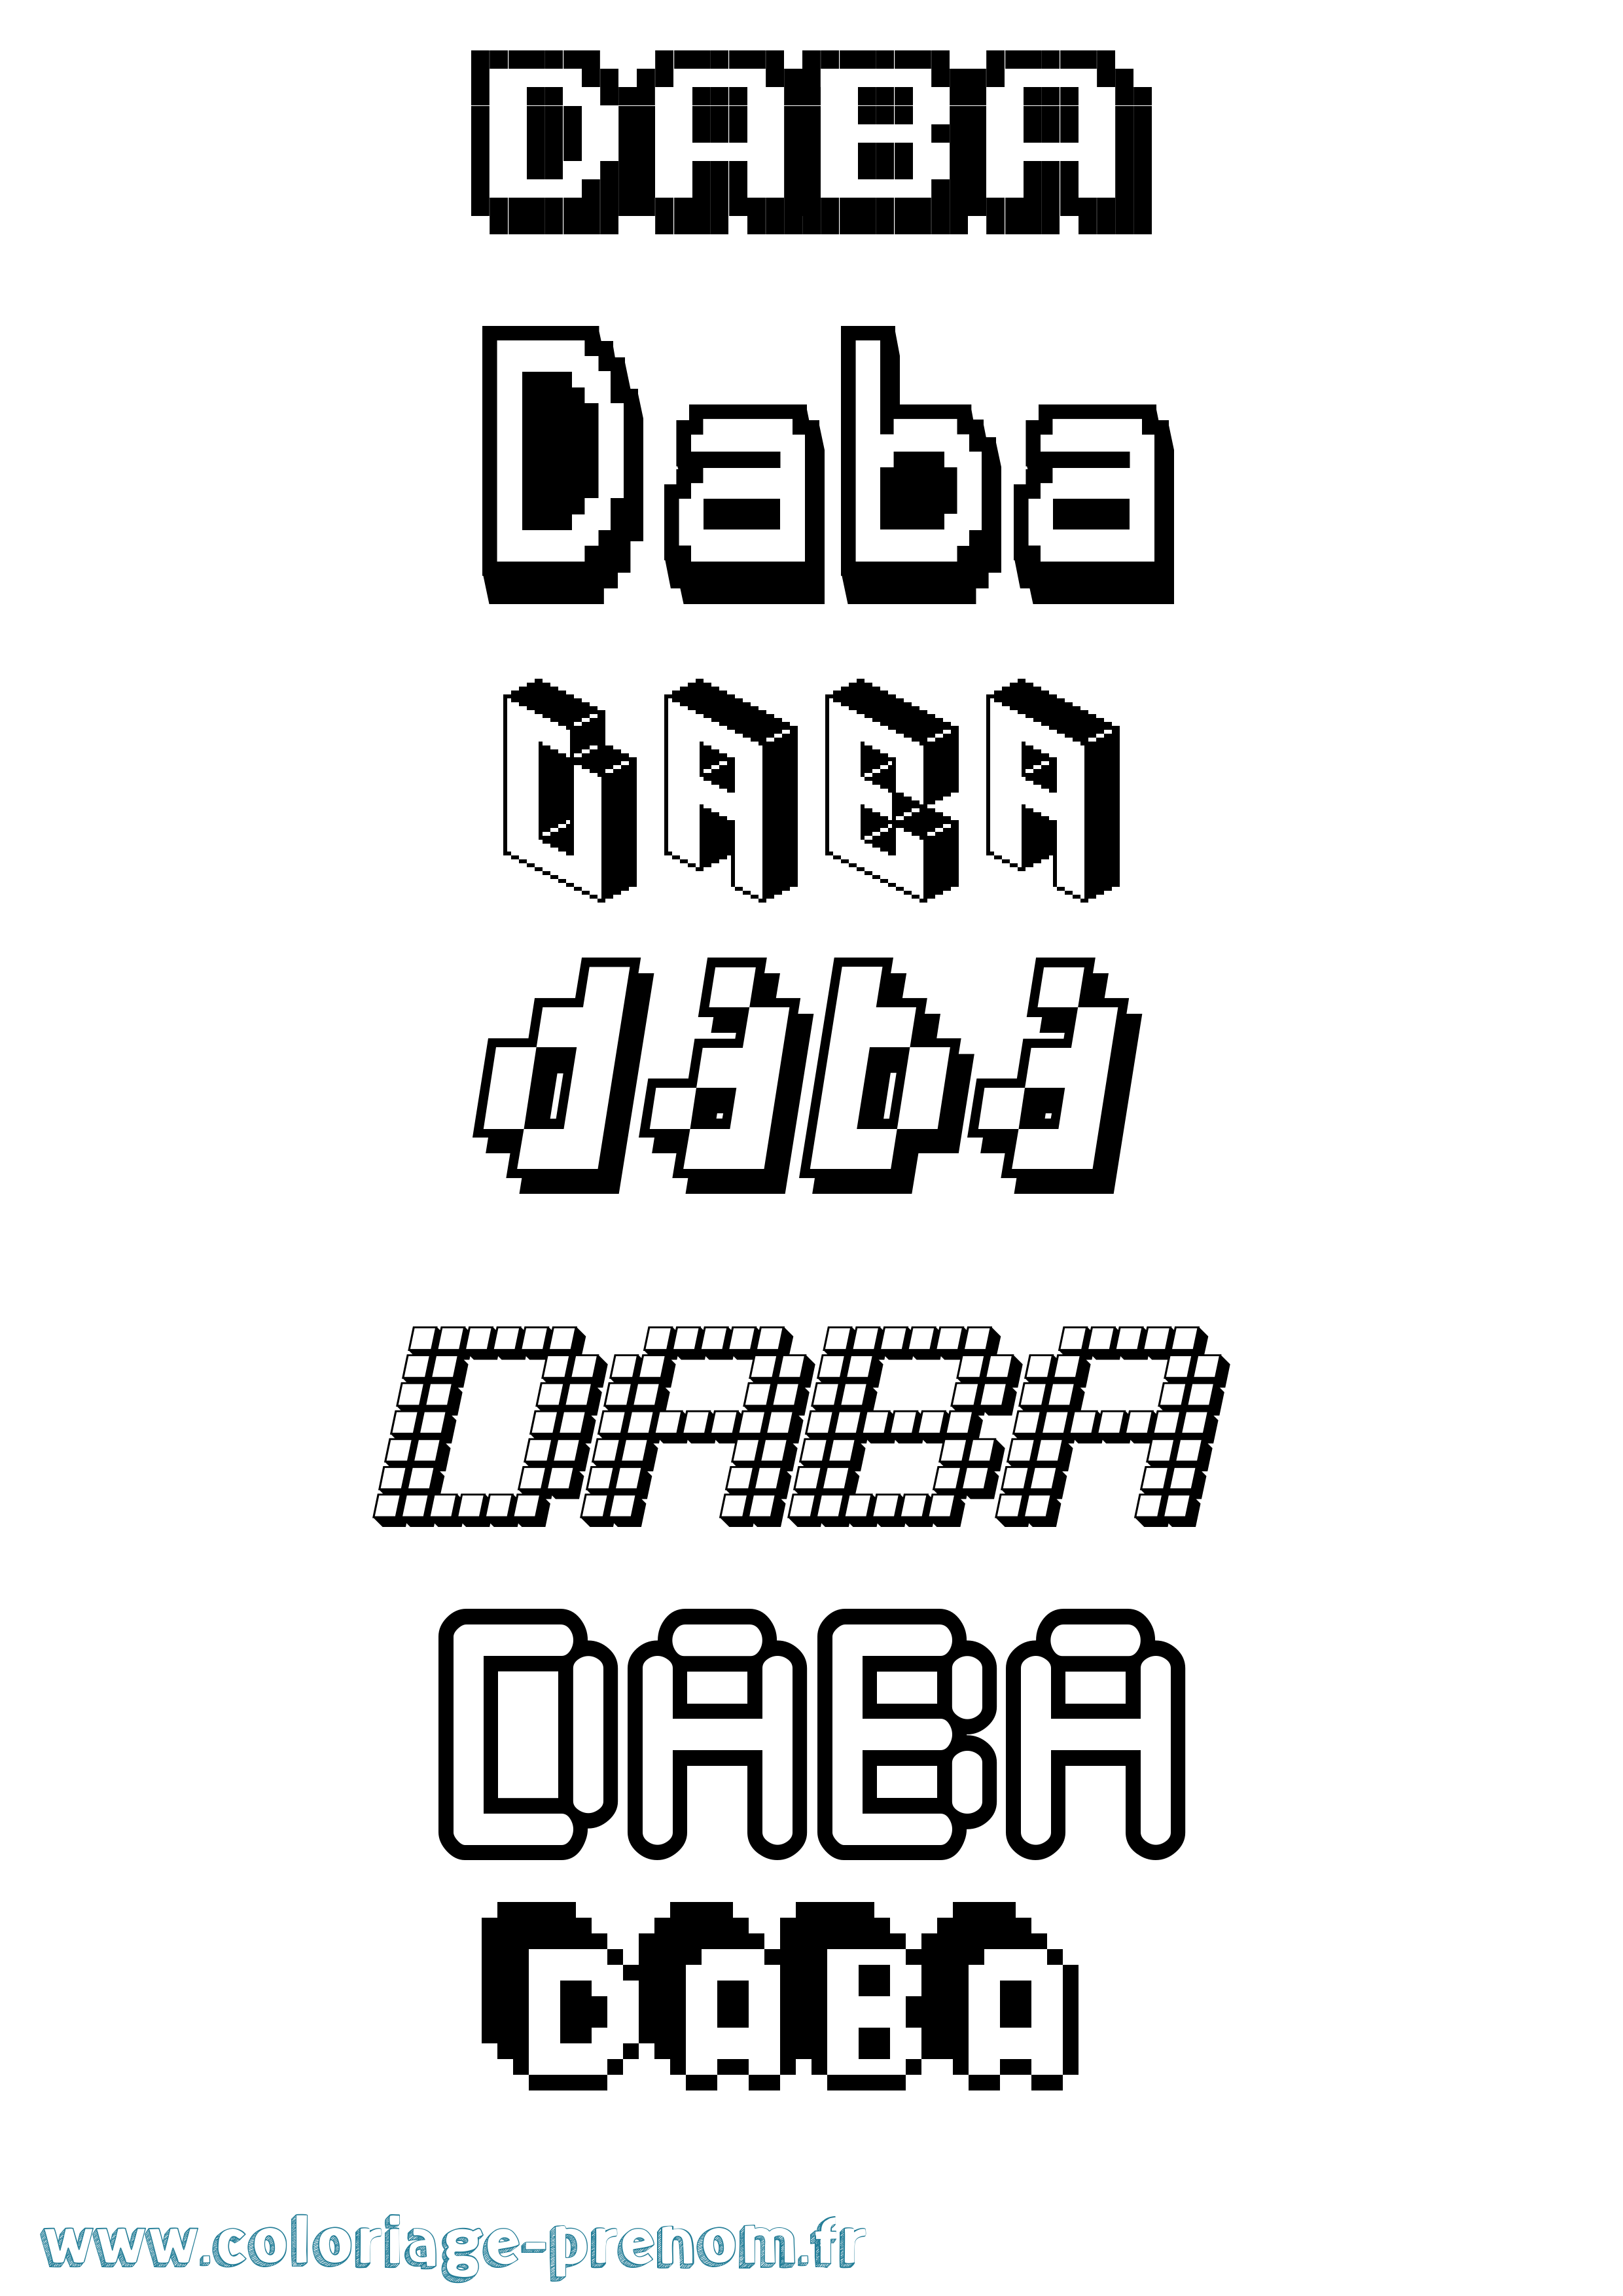 Coloriage prénom Daba Pixel